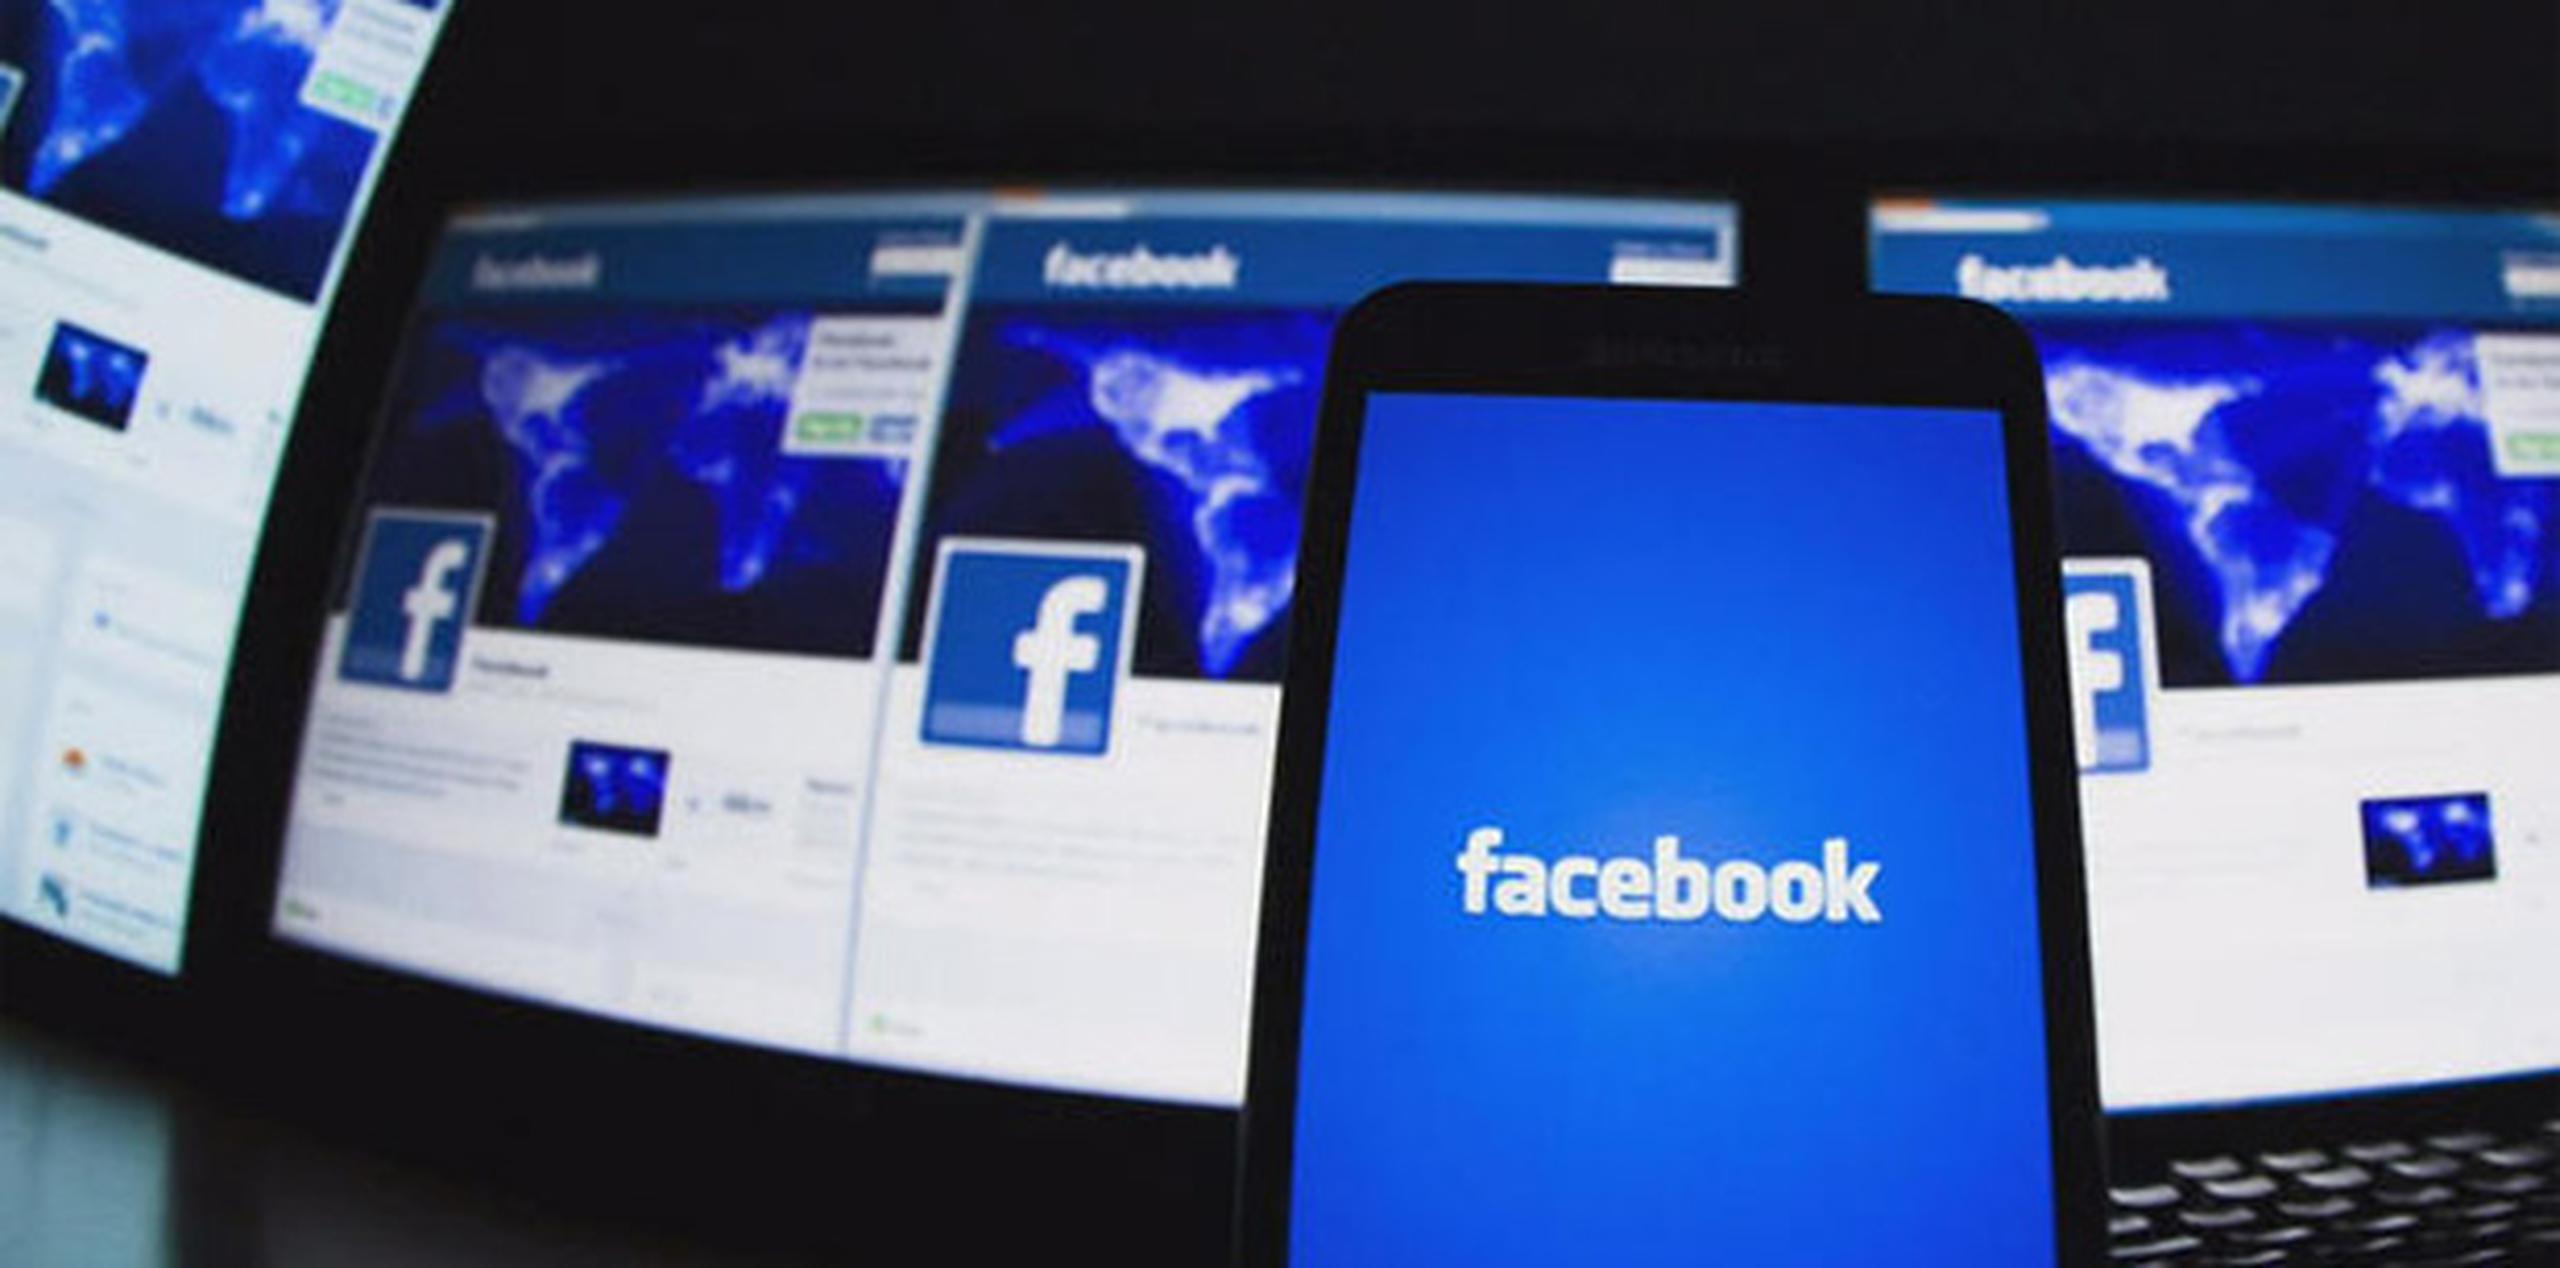 El fallo de la corte de apelaciones de París podría fijar un precedente legal en Francia, donde Facebook tiene más de 30 millones de usuarios regulares. Puede ser apelada en la corte suprema de Francia. (AP)